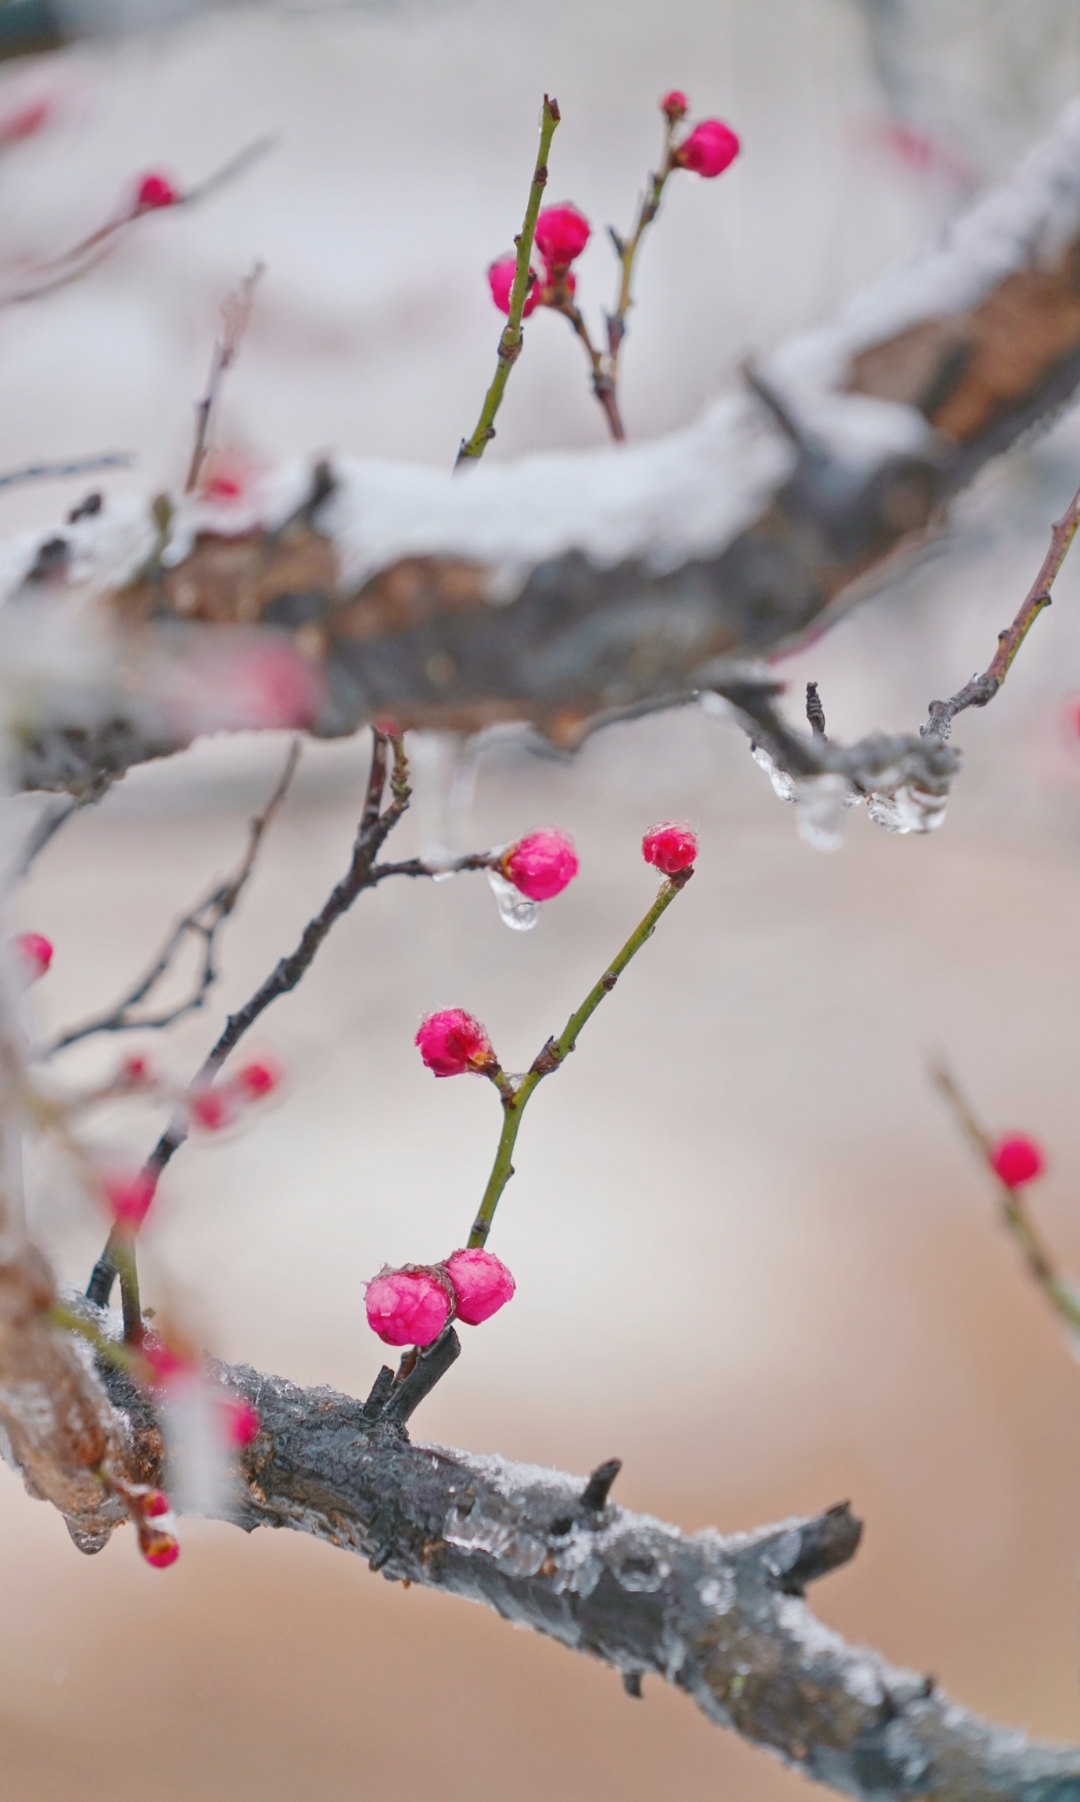 【红梅品格】 寒冬腊月,万物凋零,梅花却傲然绽放,为冬日增添了一抹